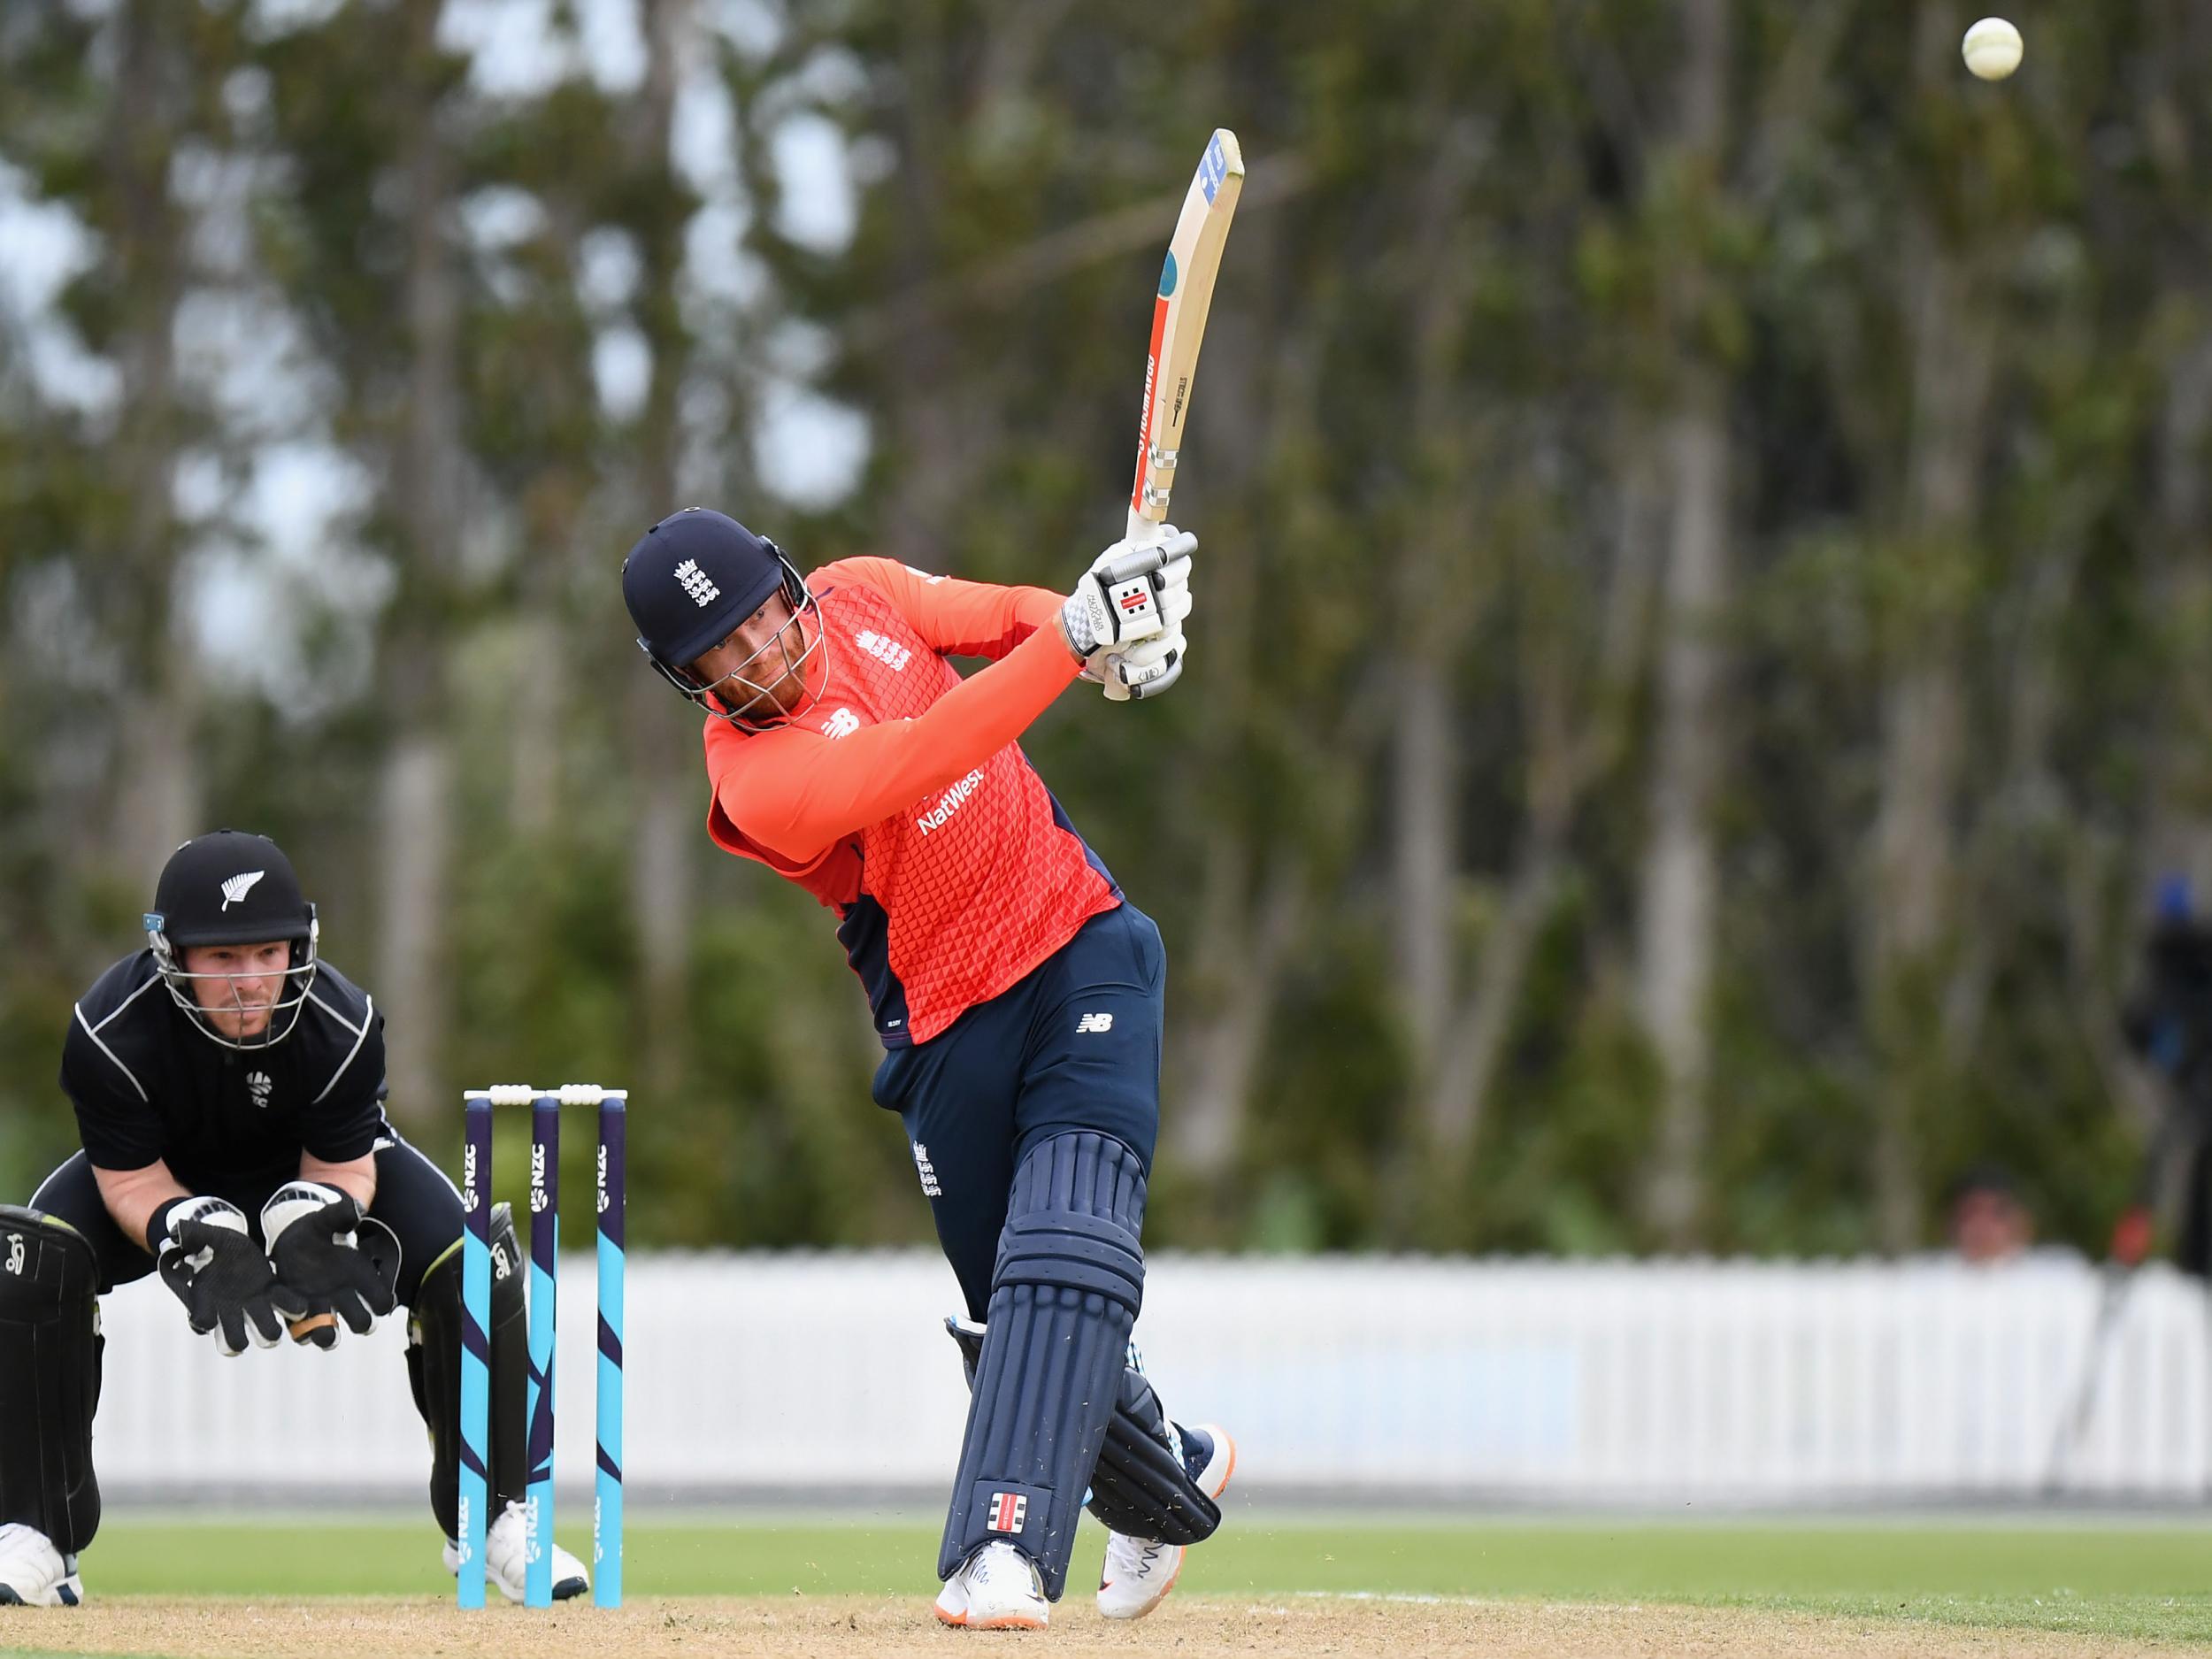 Jonny Bairstow hit an unbeaten 78 as England beat a New Zealand XI